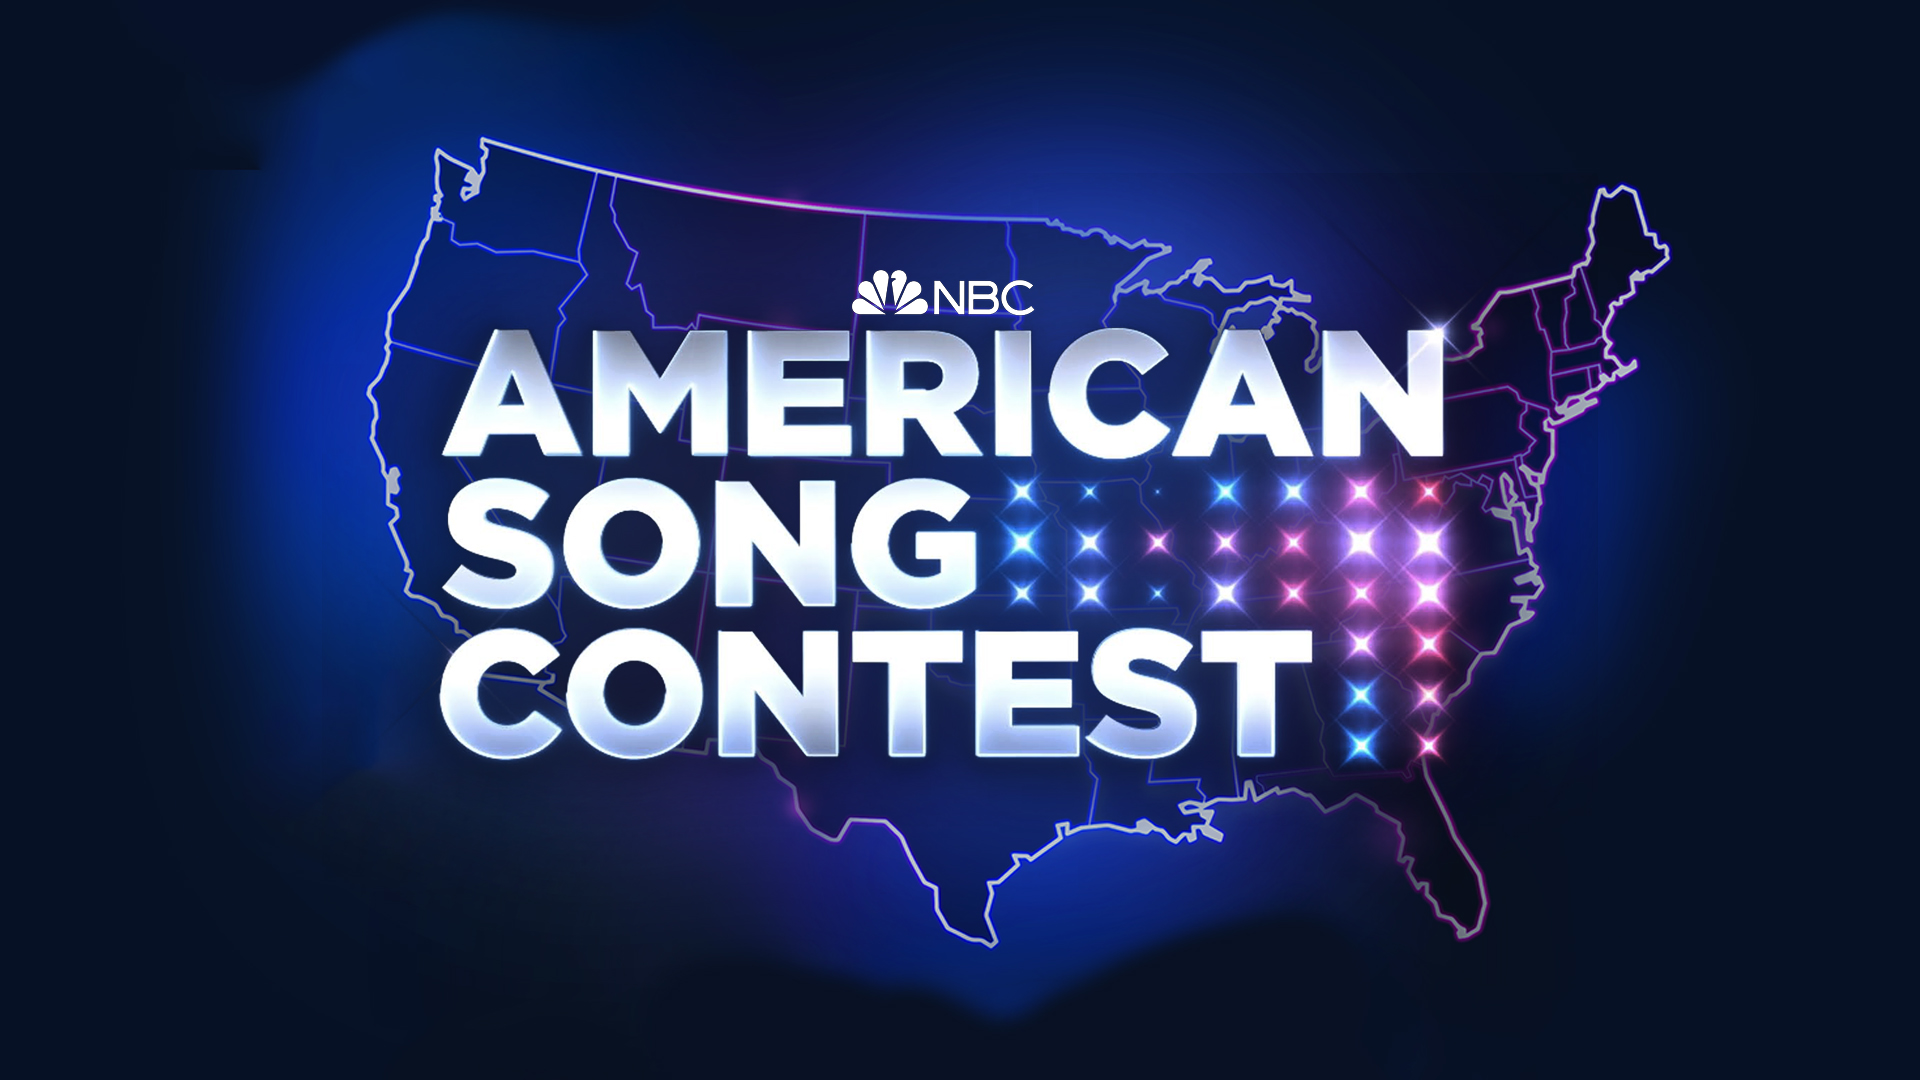 La NRK se suma a la lista de televisiones europeas que emitirán el American Song Contest